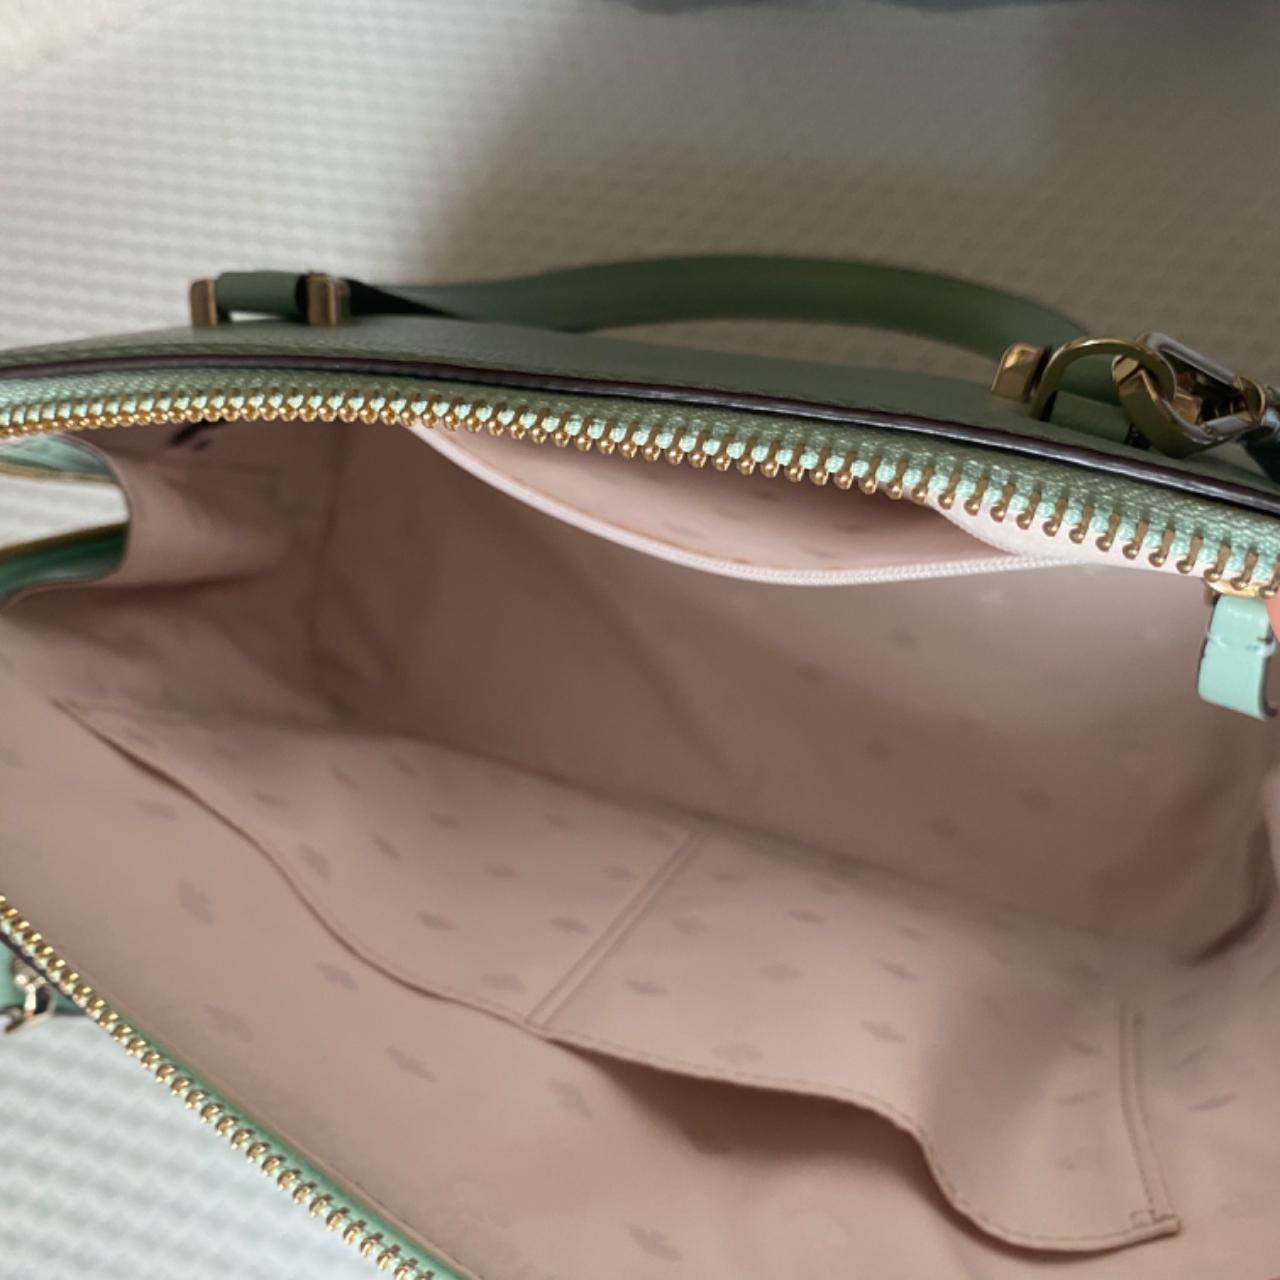 Women recount why their Kate Spade purse was more than a handbag | CNN